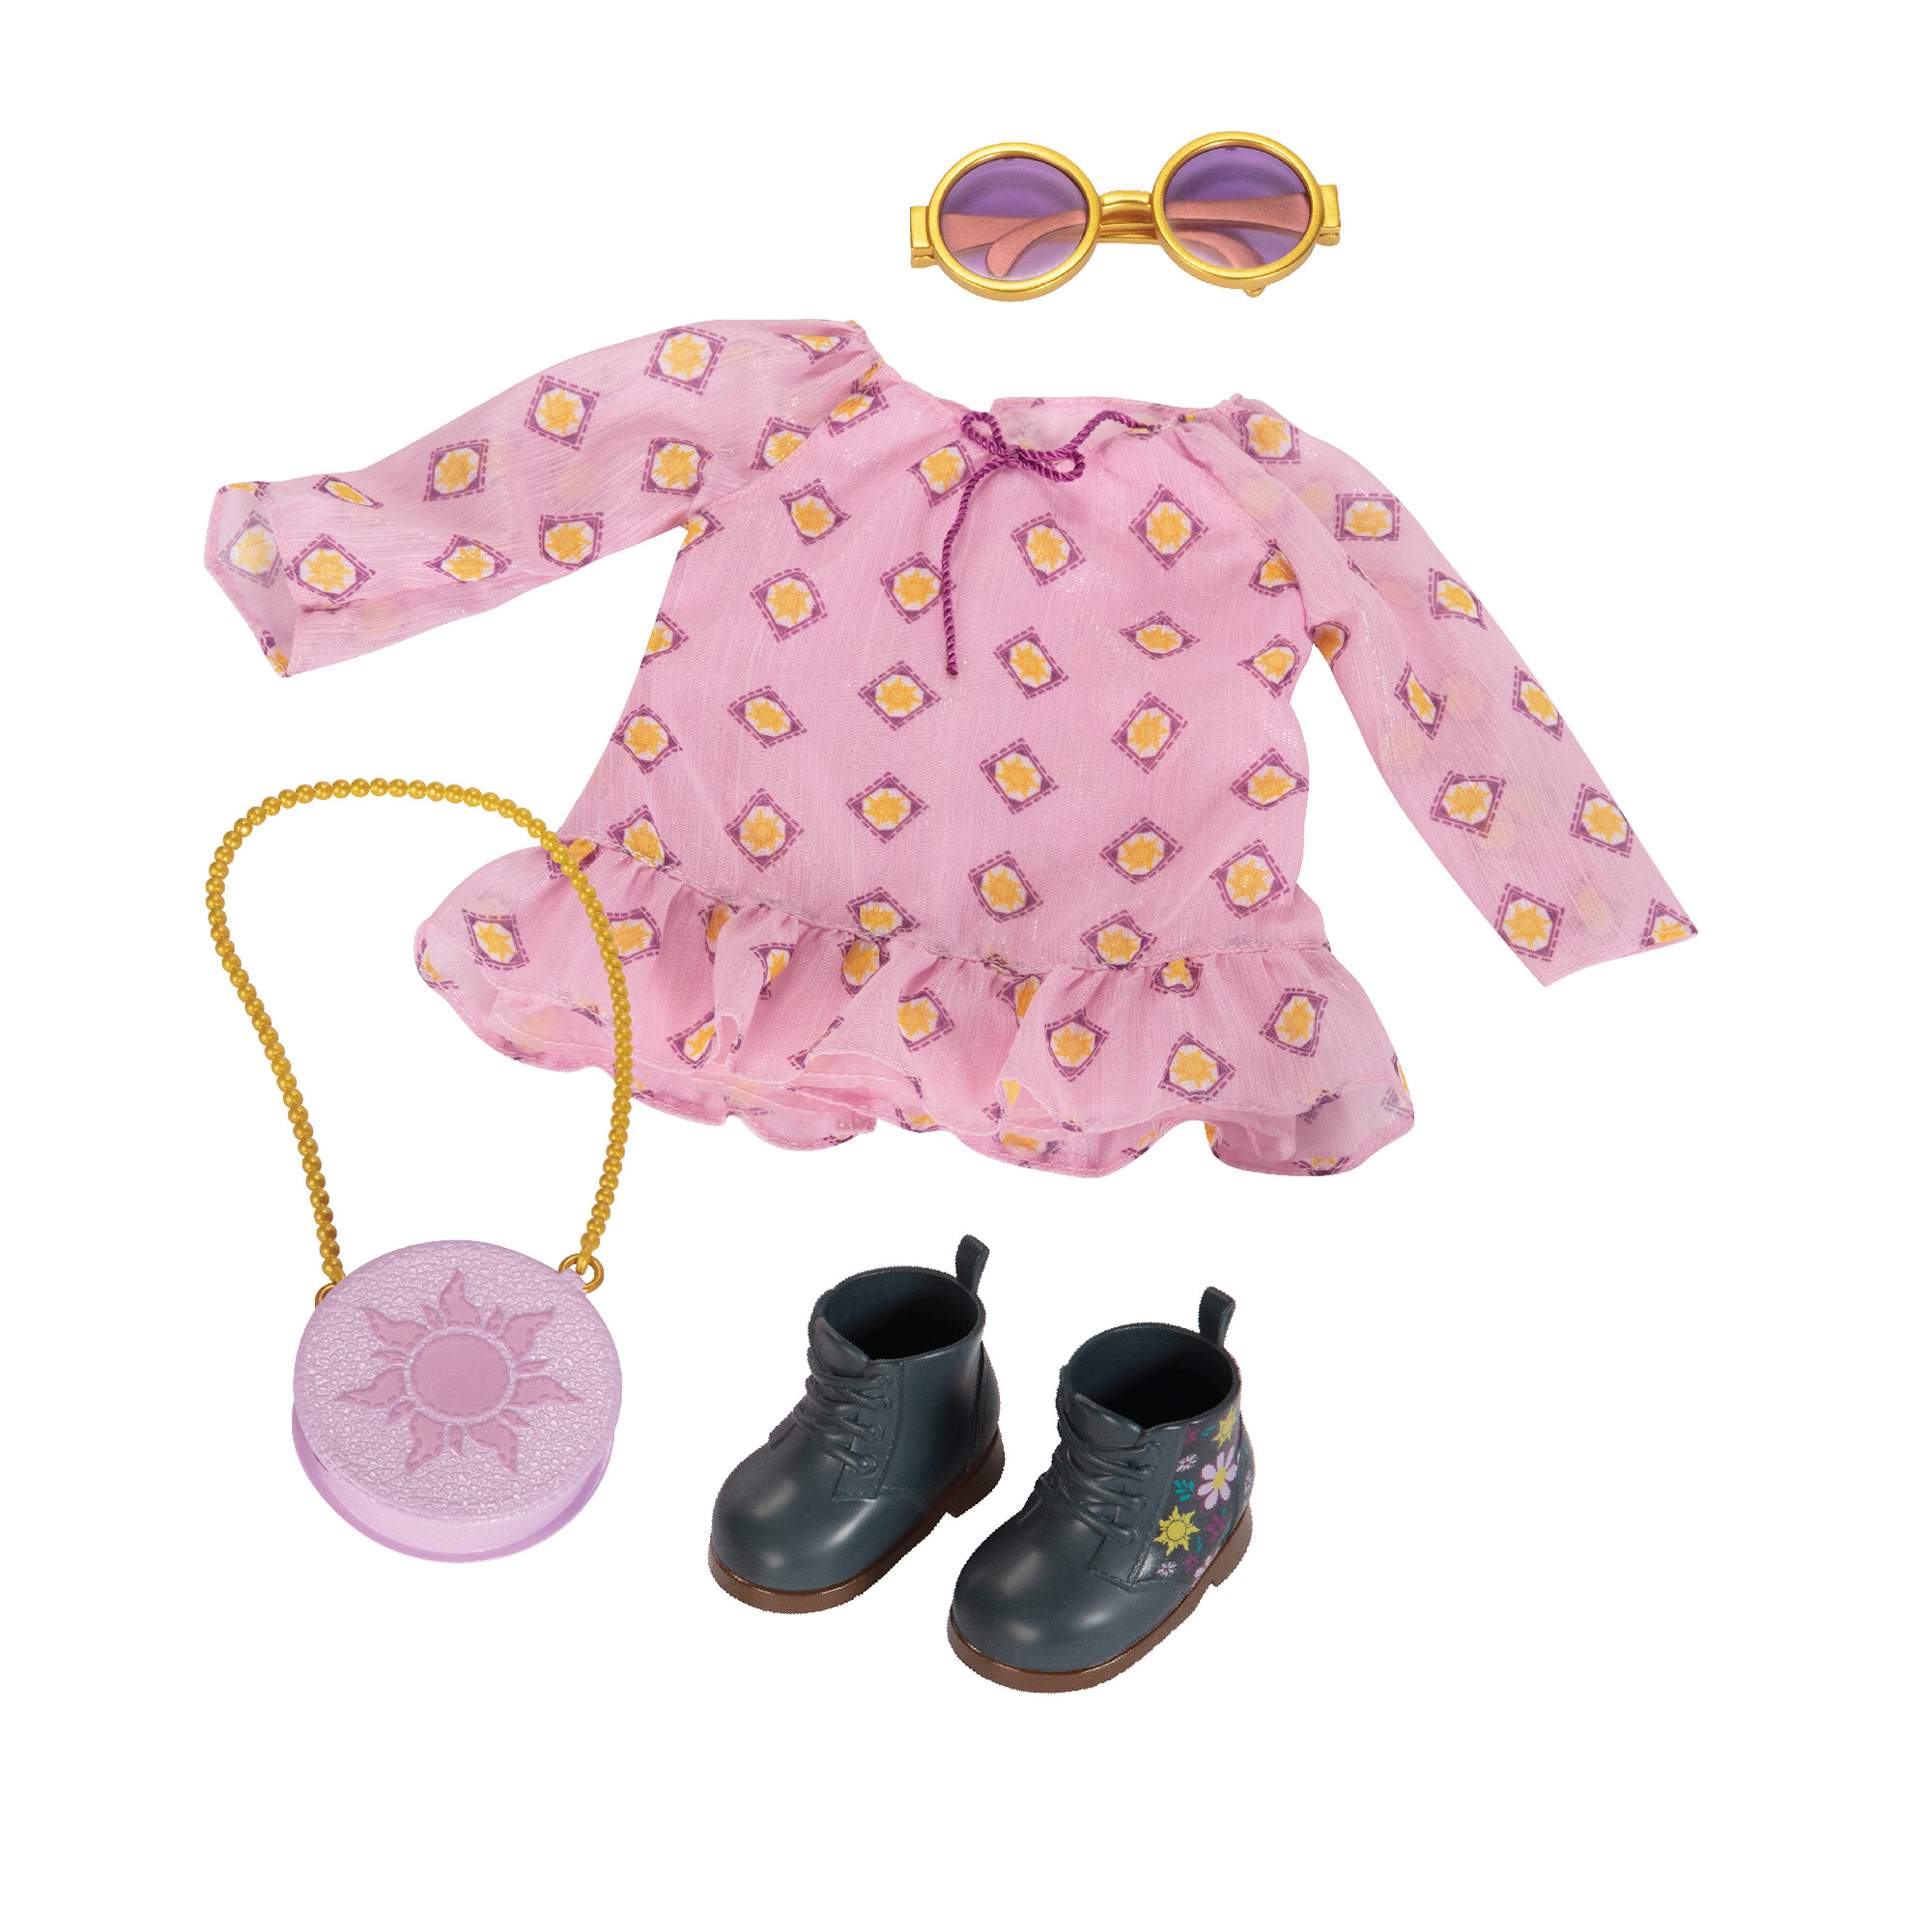 Disney ily 4ever accessory pack ispirato a rapunzel con abiti e accessori - DISNEY PRINCESS